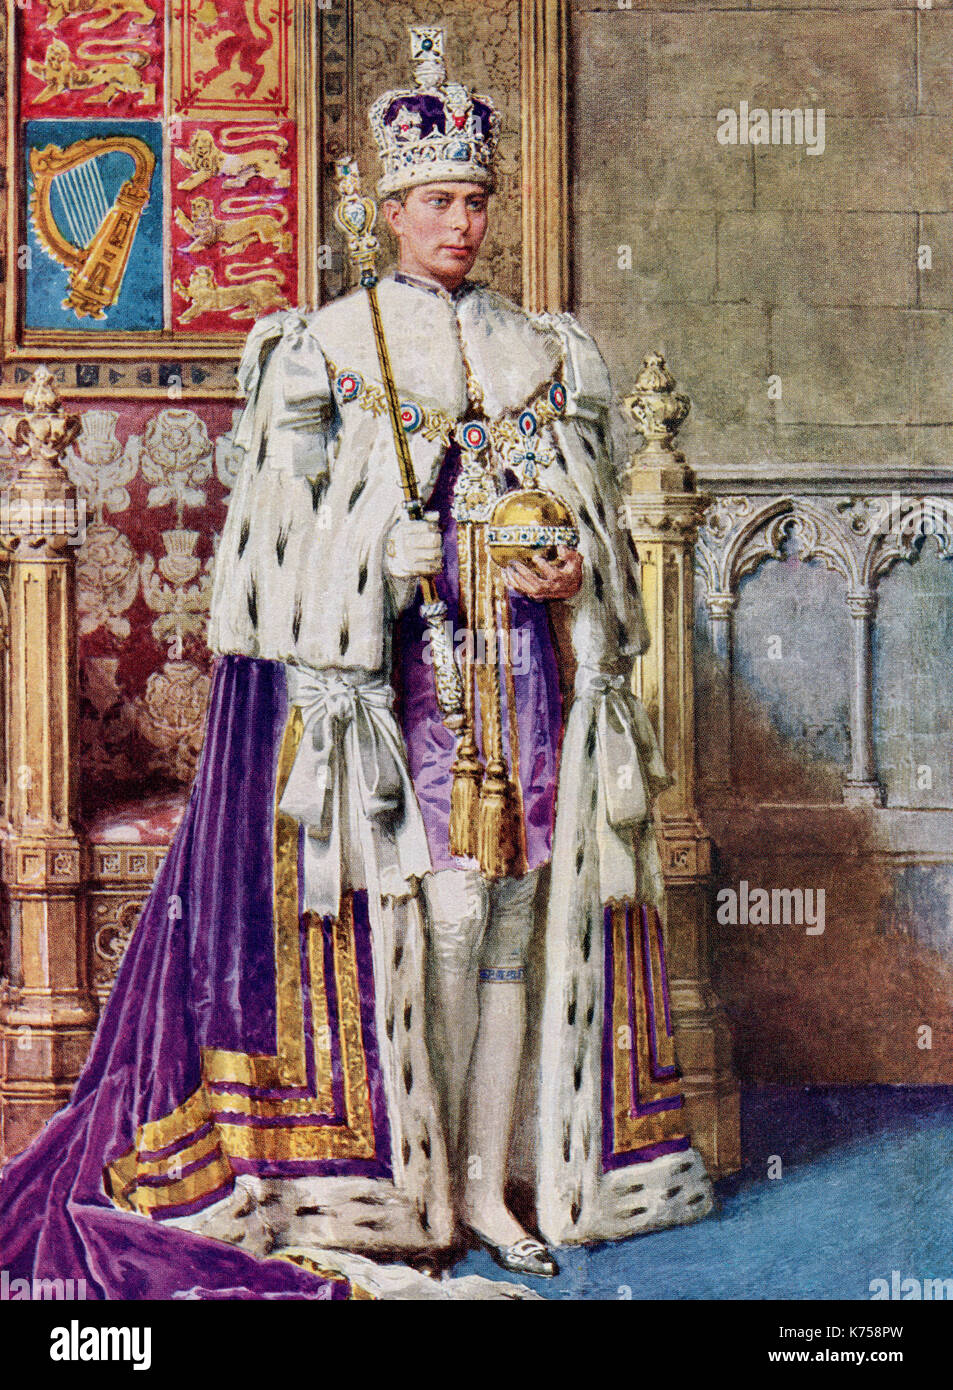 George vi à coronation robes, 1936. george vi, 1895 - 1952. roi du Royaume-Uni et des dominions du Commonwealth britannique. à partir du livre de couronnement du roi George VI et la reine Elizabeth, publié 1937. Banque D'Images